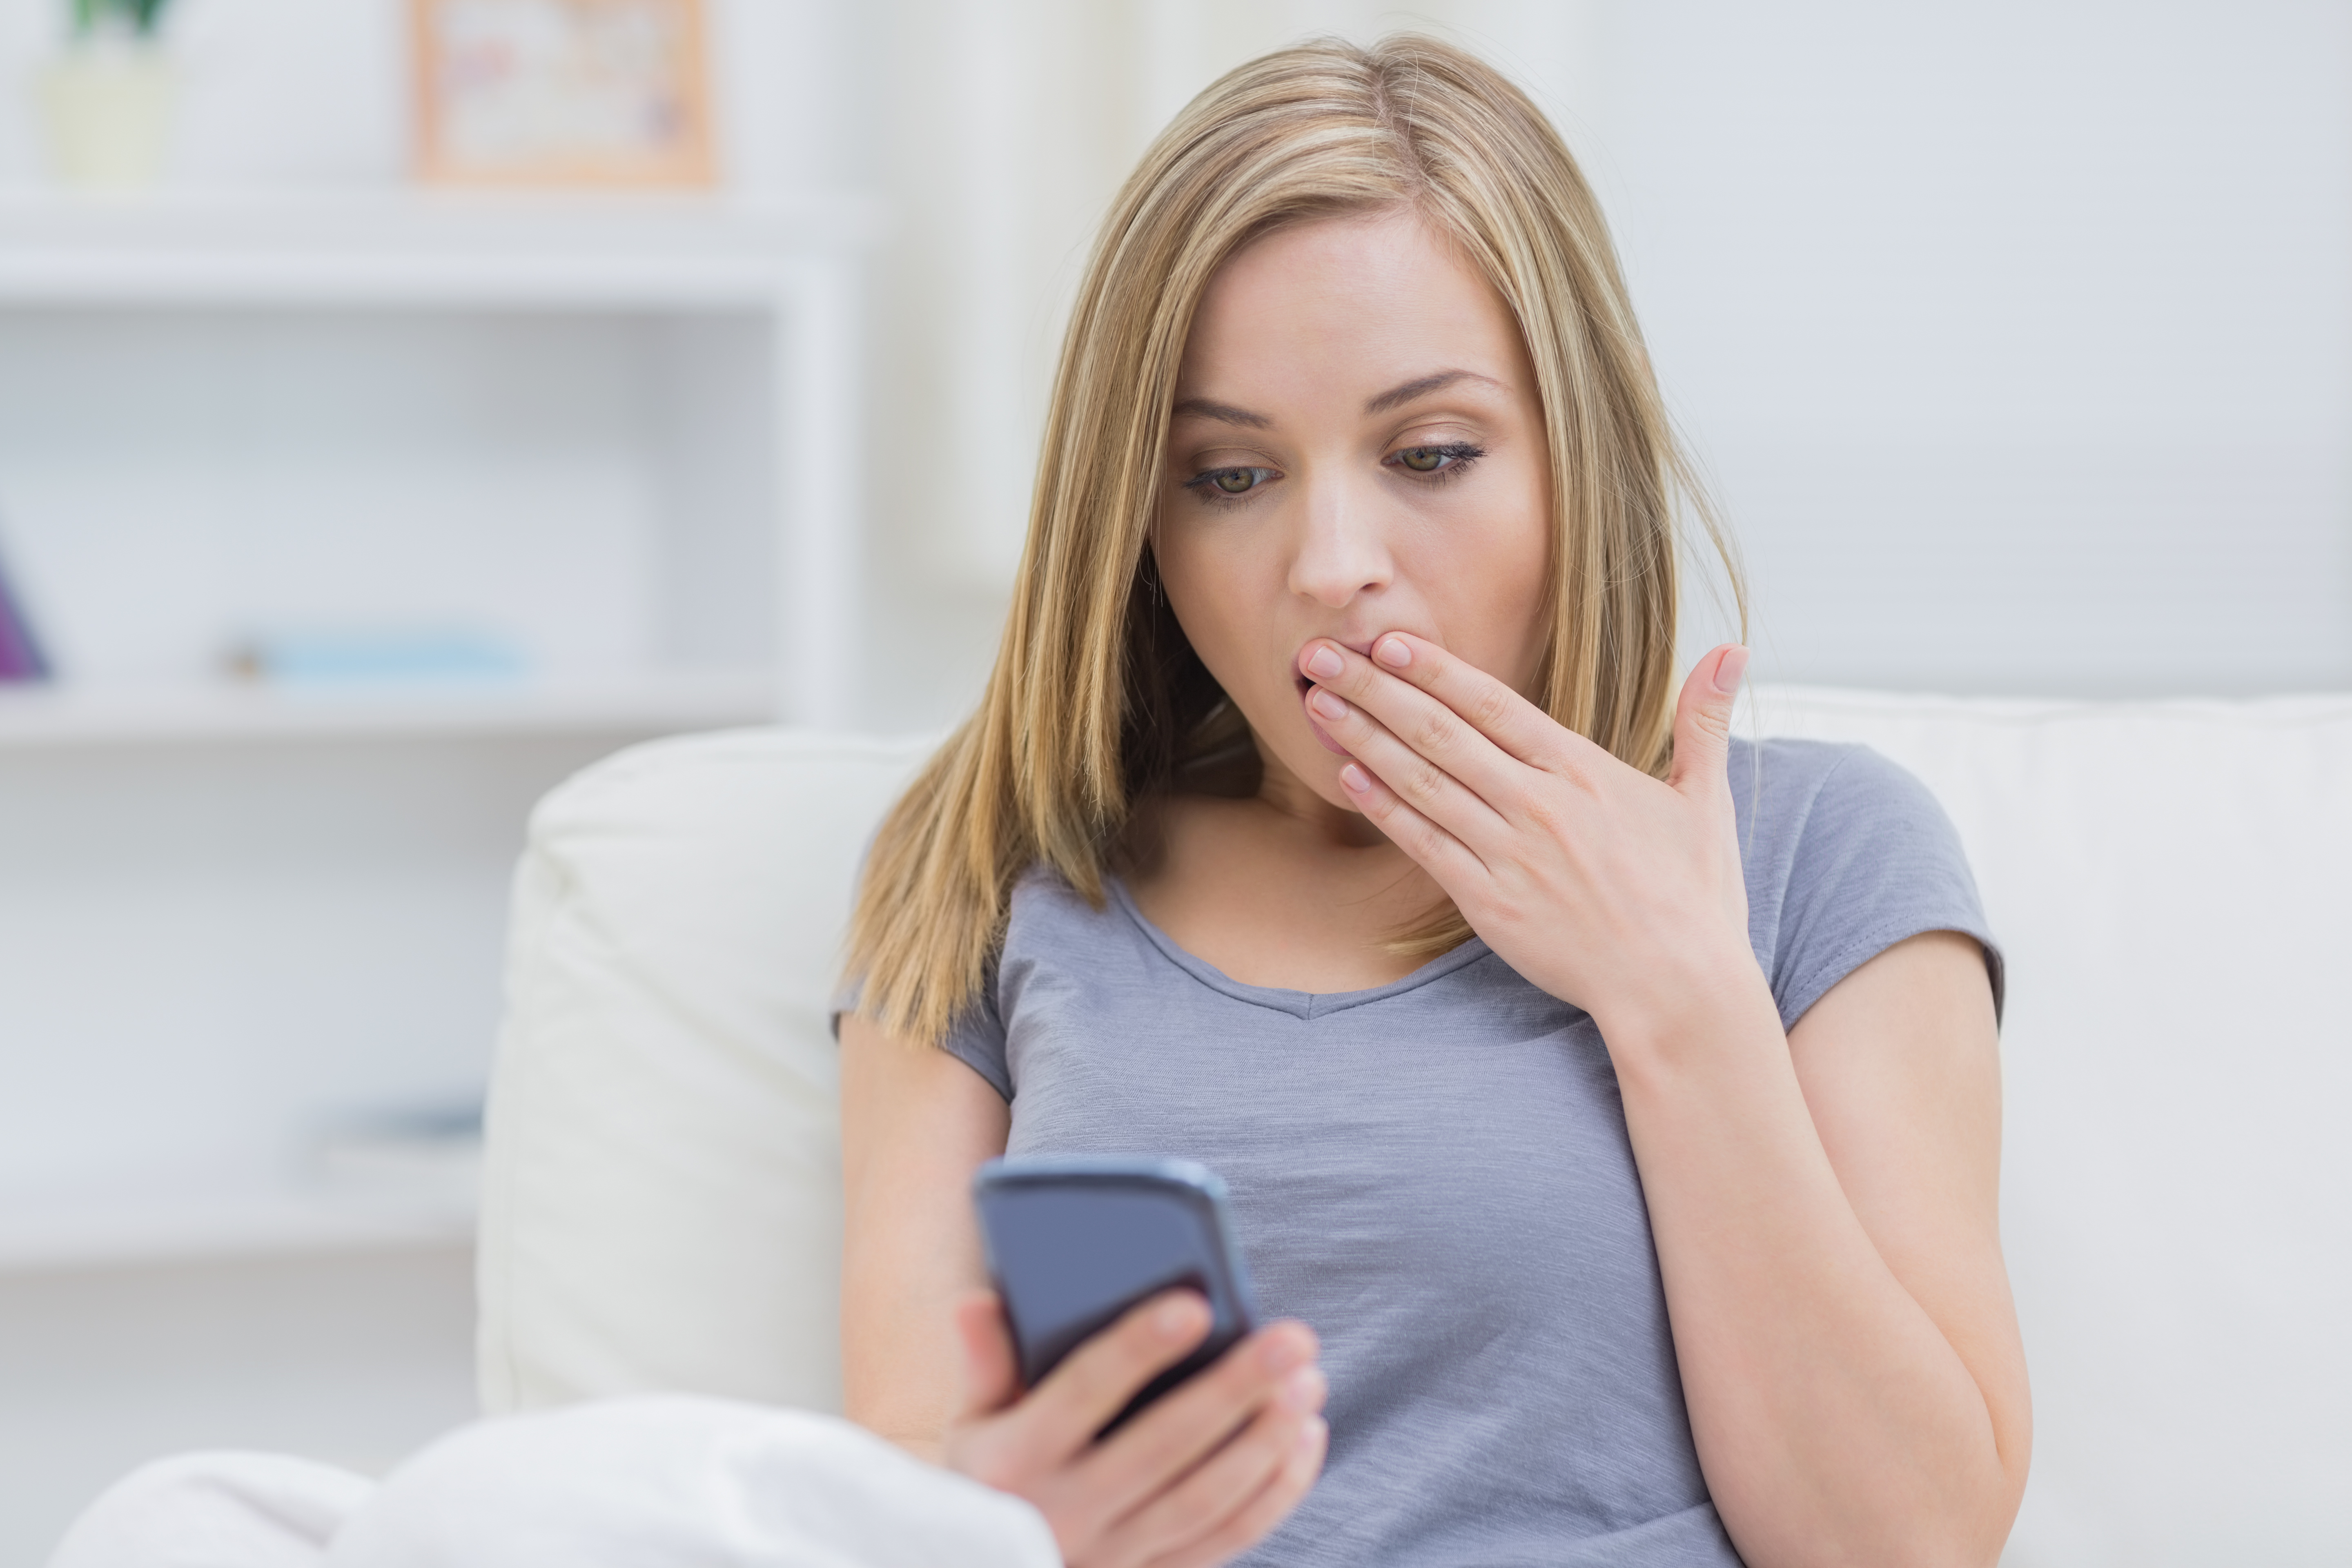 Femme exprimant un choc en regardant son téléphone portable. | Source : Shutterstock